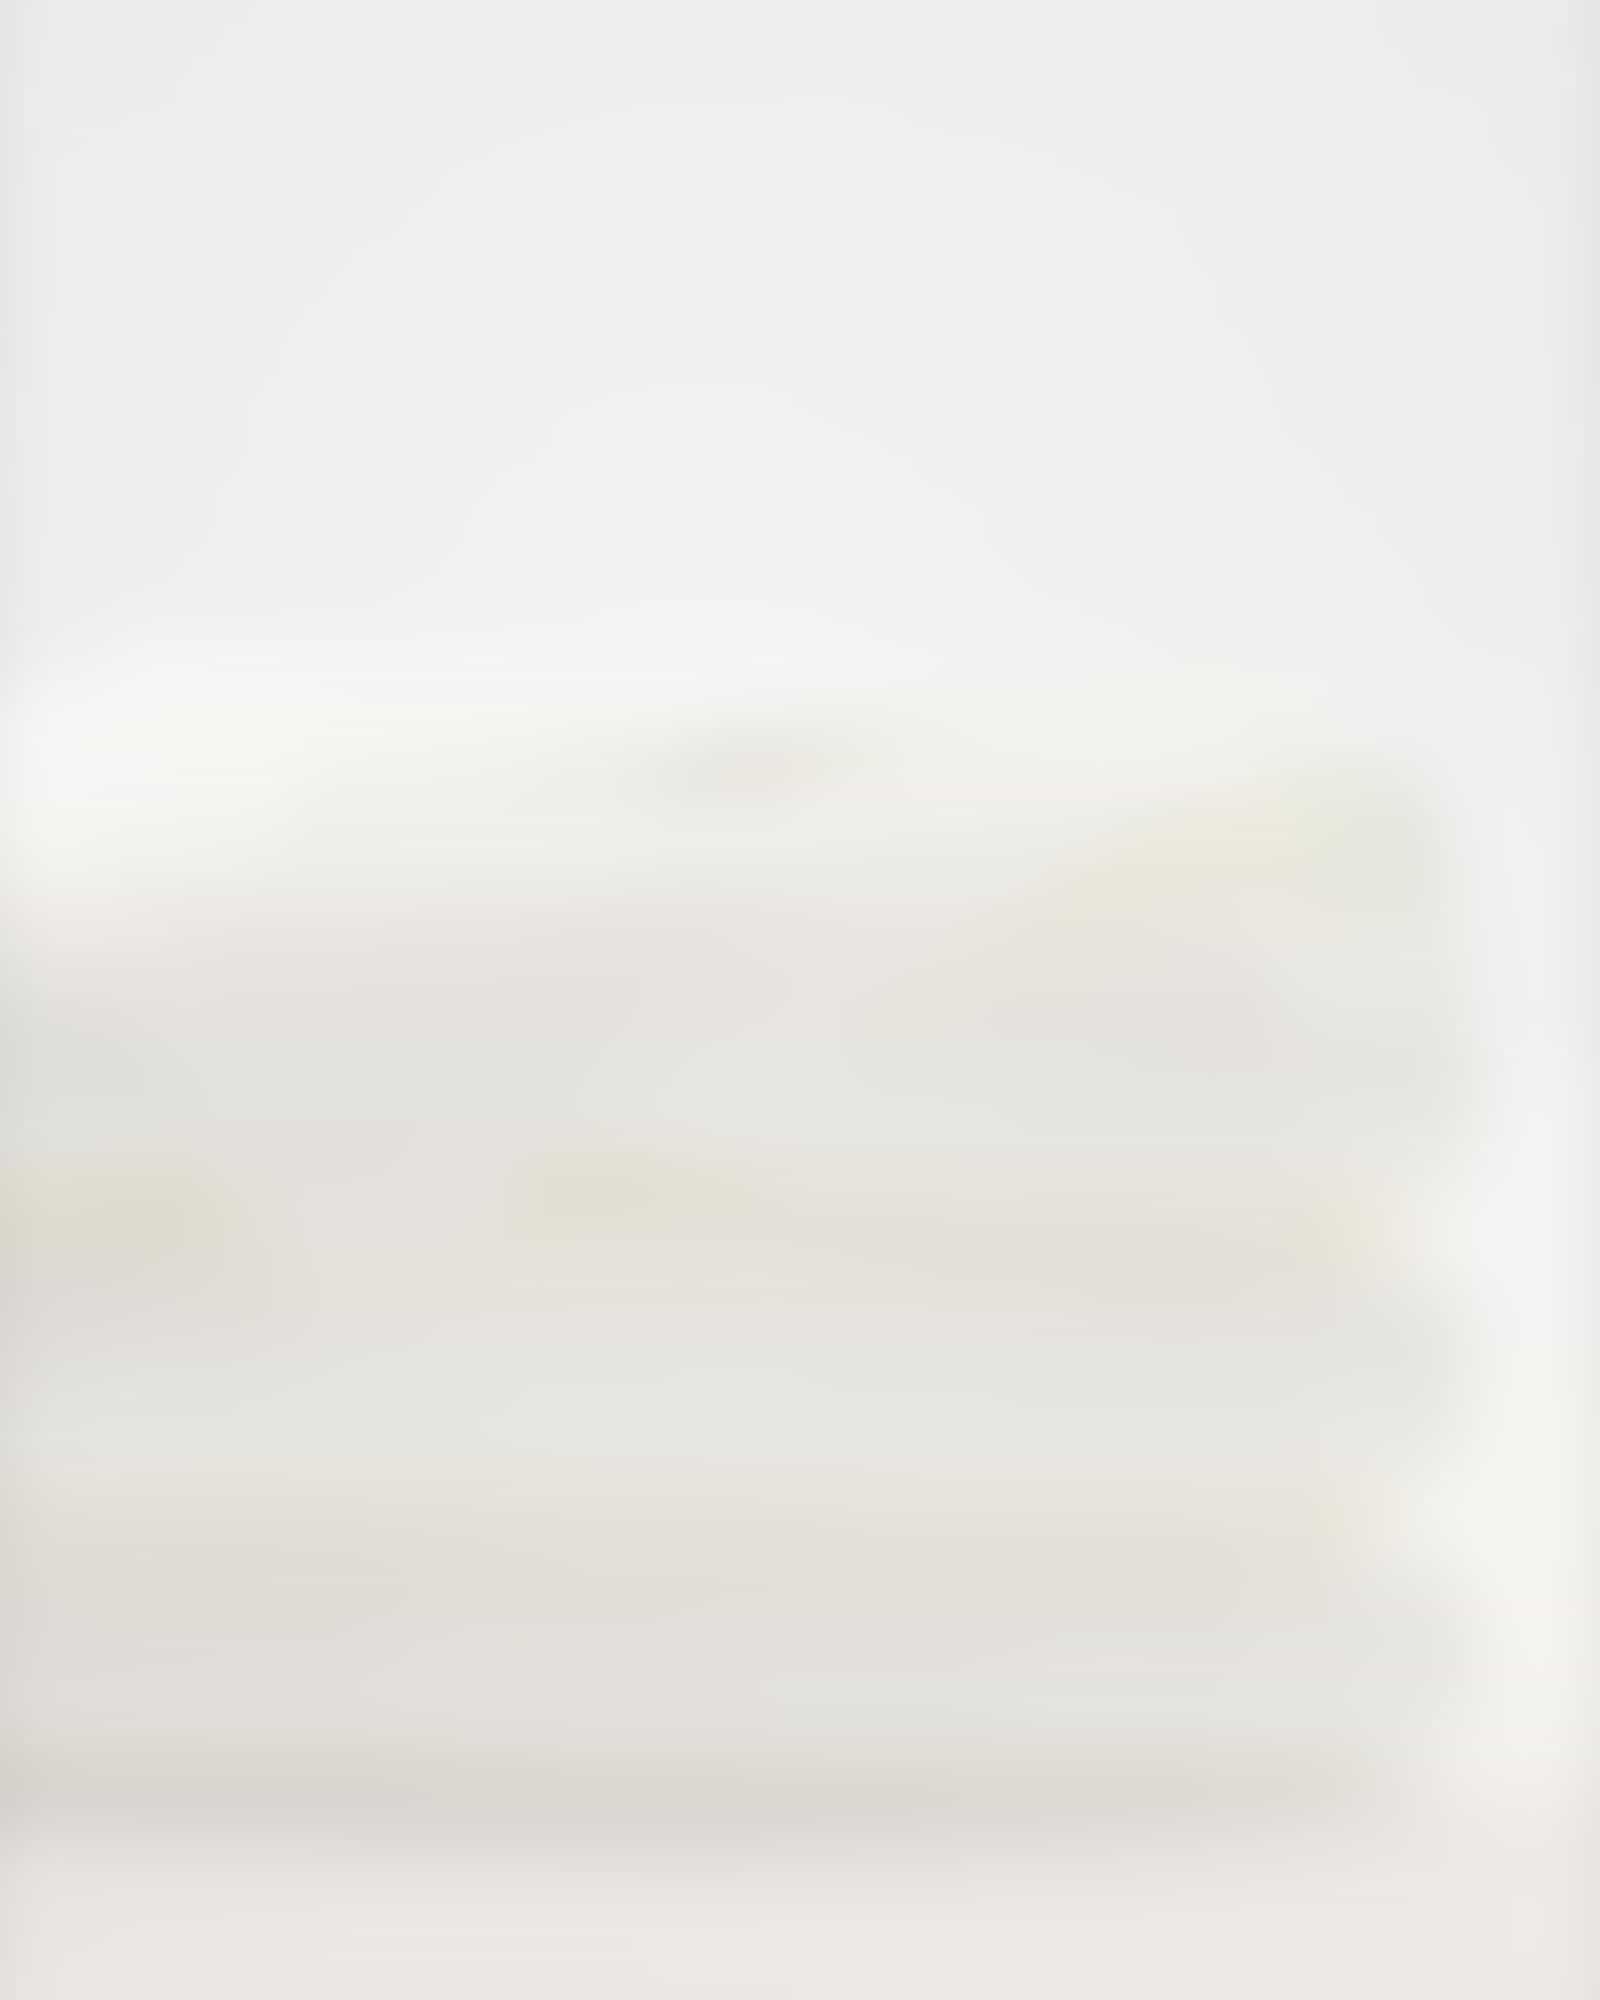 Möve - Superwuschel - Farbe: snow - 001 (0-1725/8775) - Saunatuch 80x200 cm